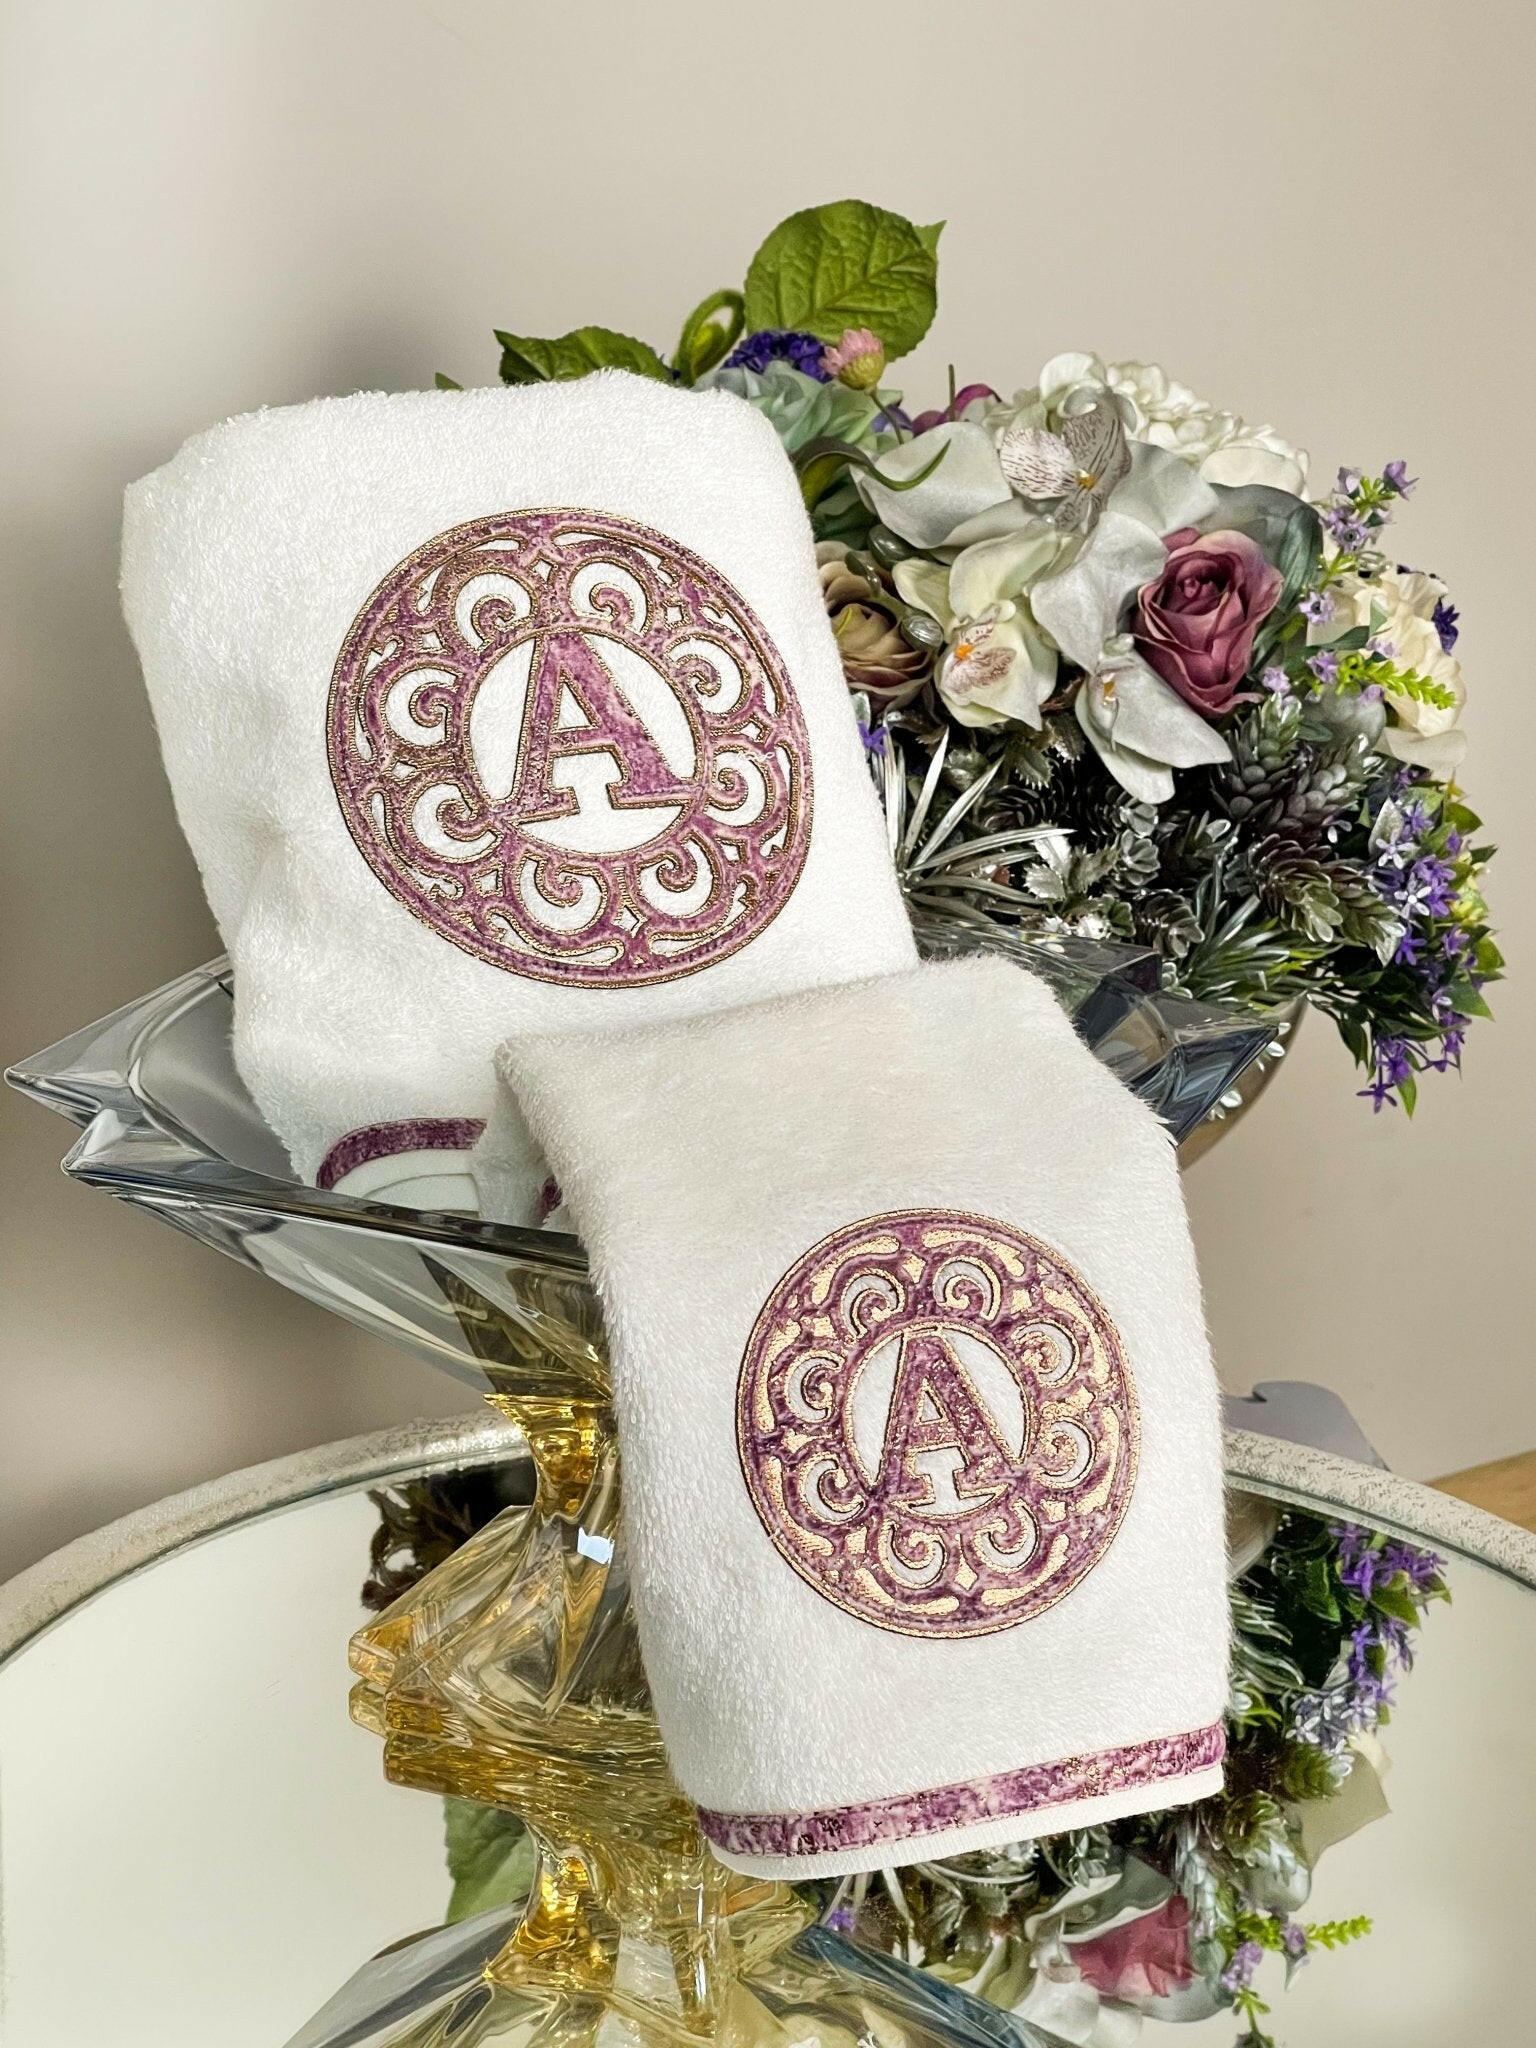 Personalized Initial Lyra Towel Set - Creative HomeTowels